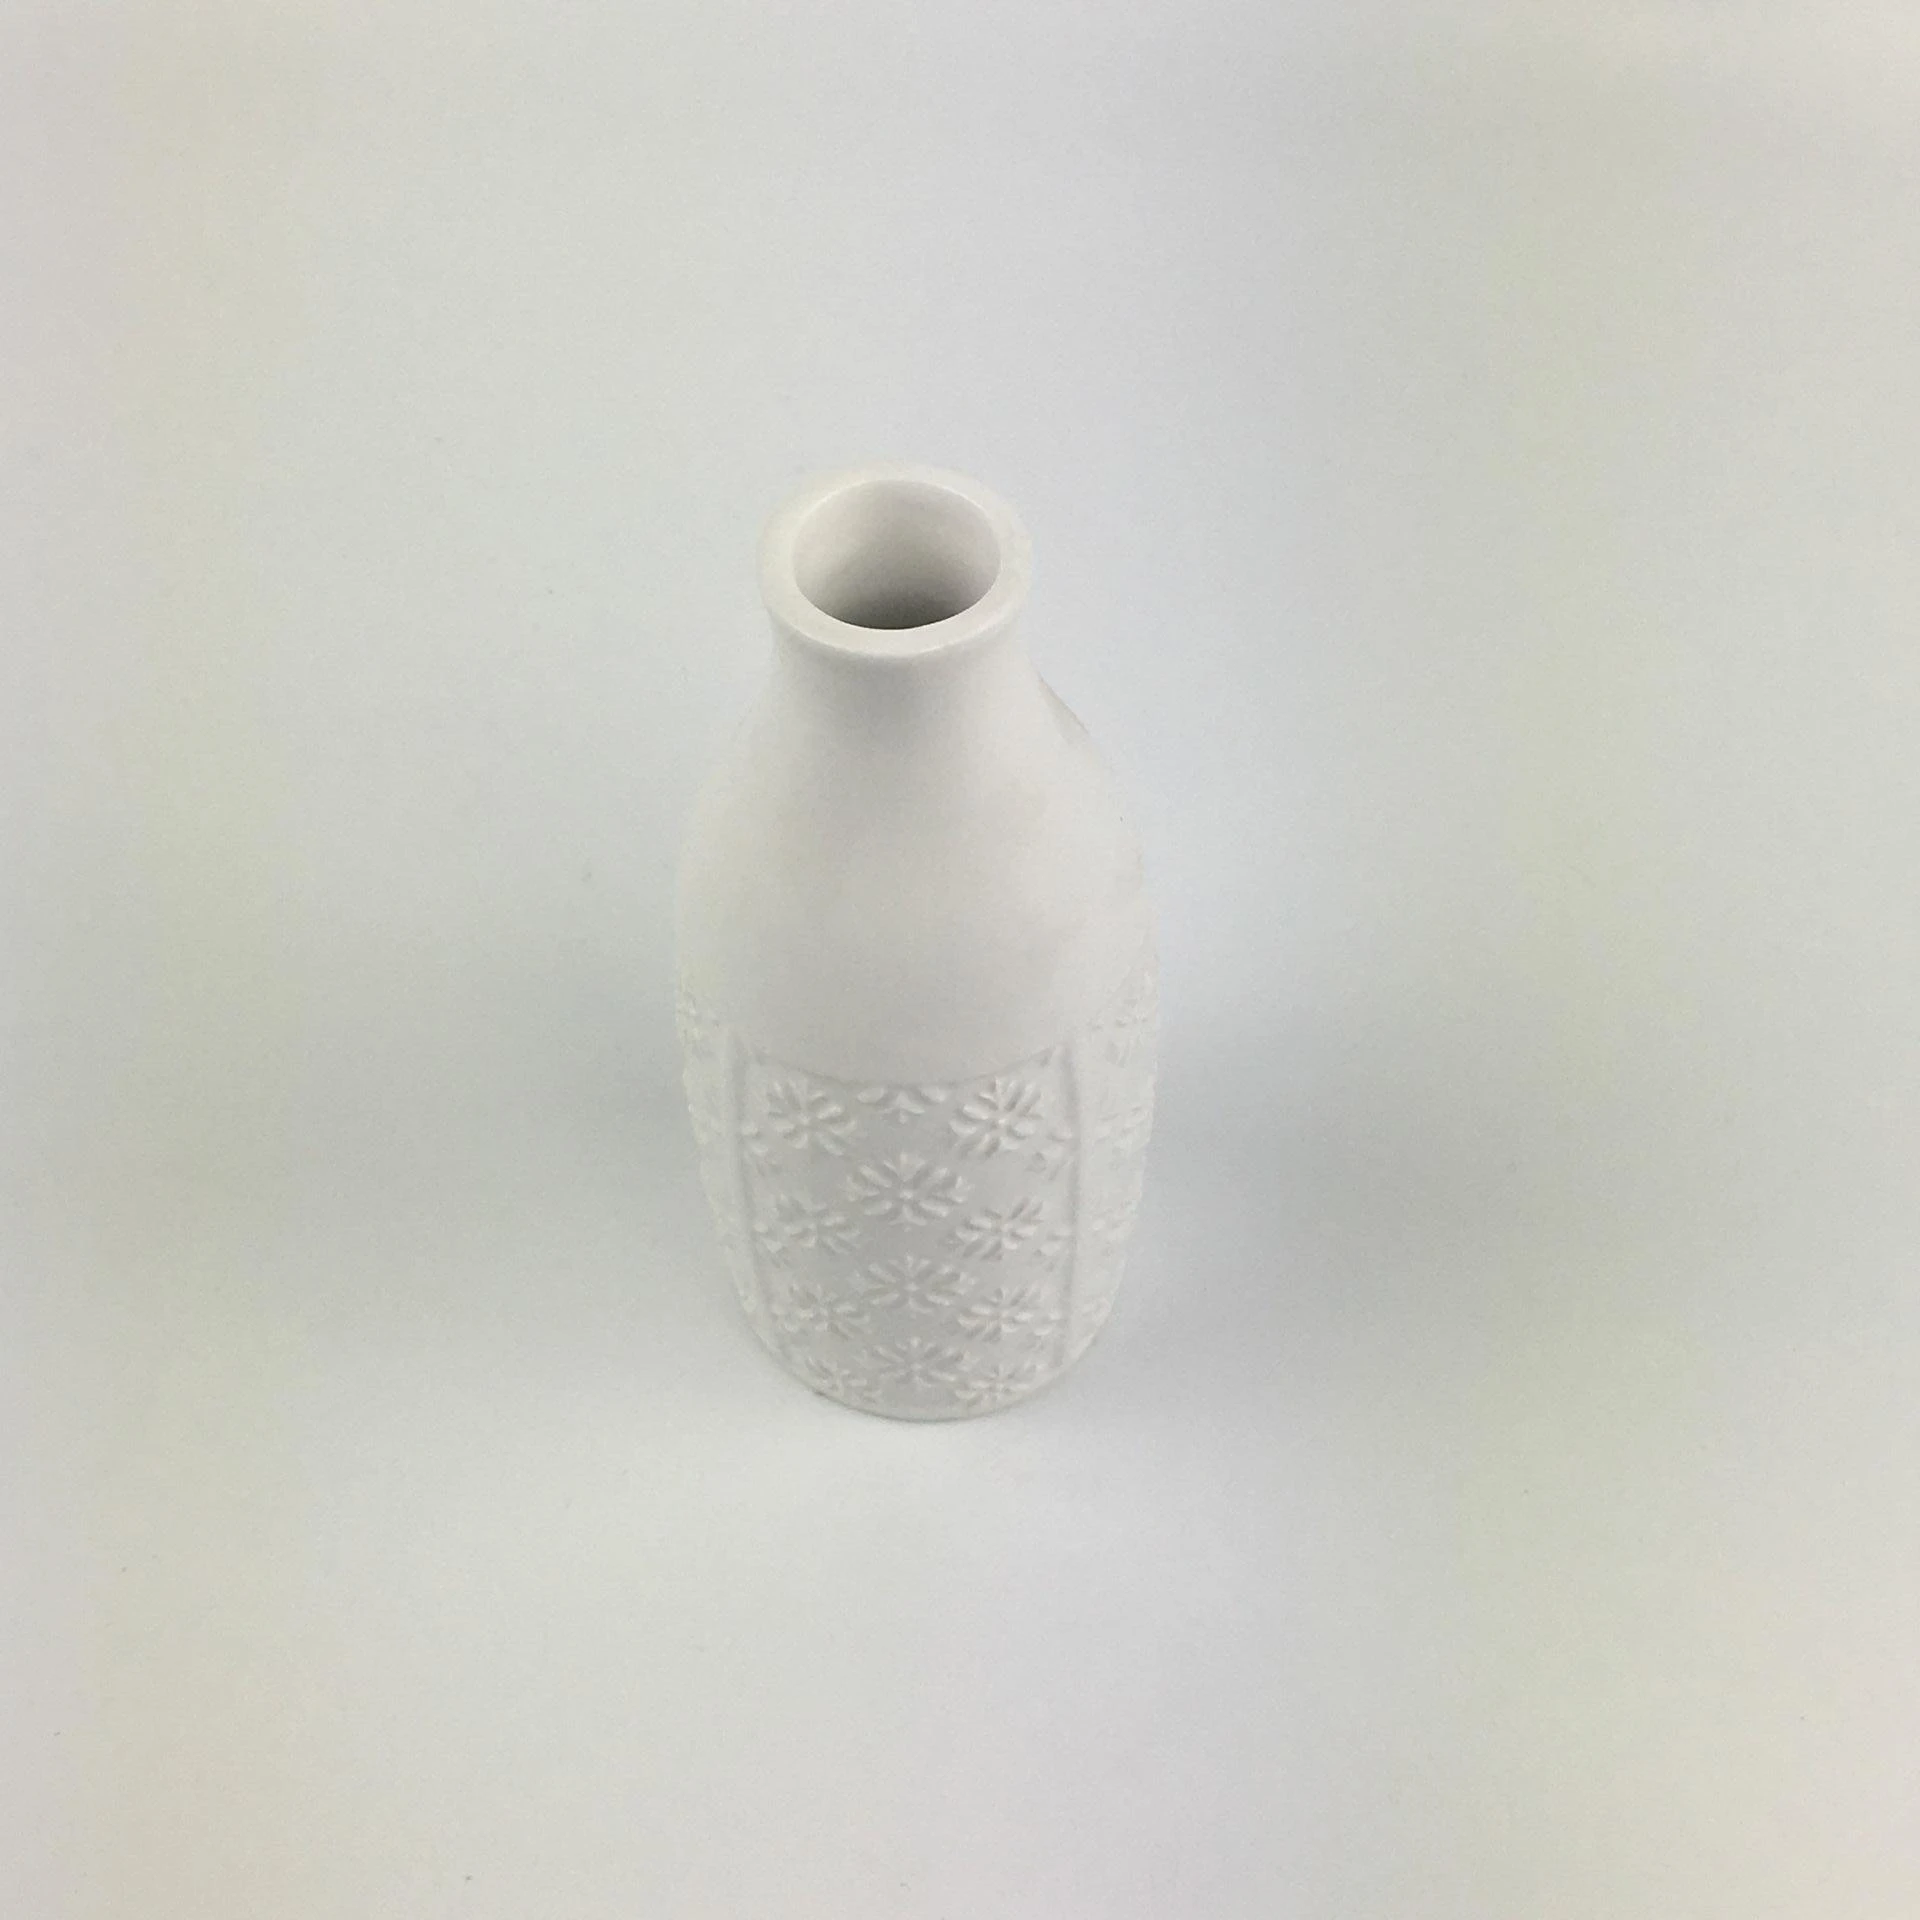 Mini White Porcelain Vases Ceramic Flower Vase with Holes